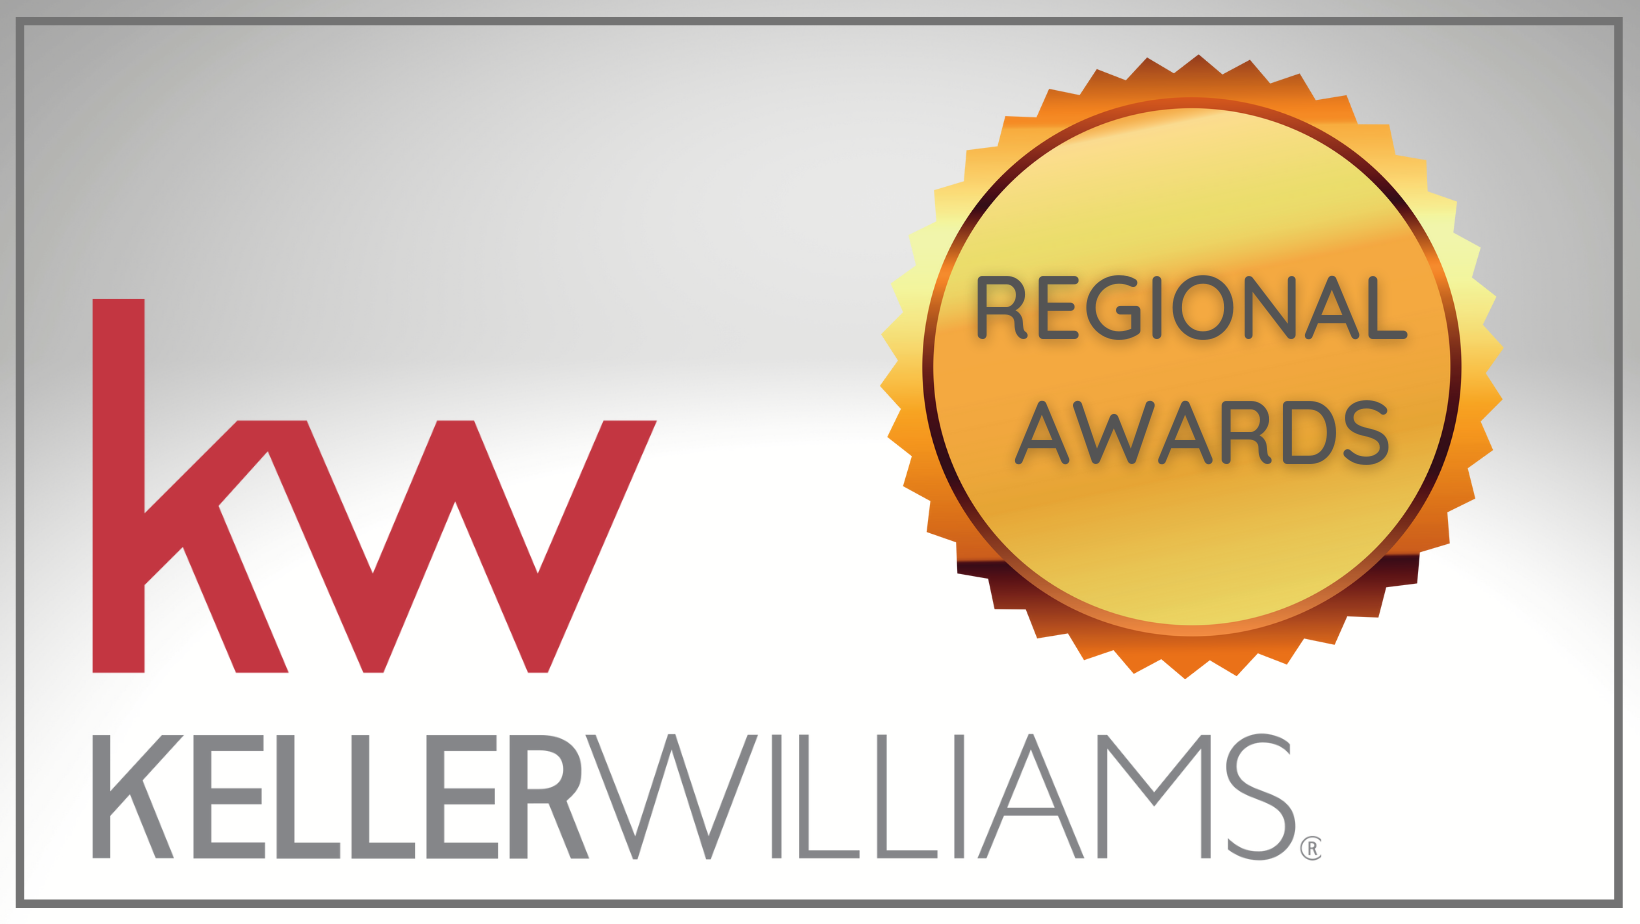 Regional Awards – Keller Williams